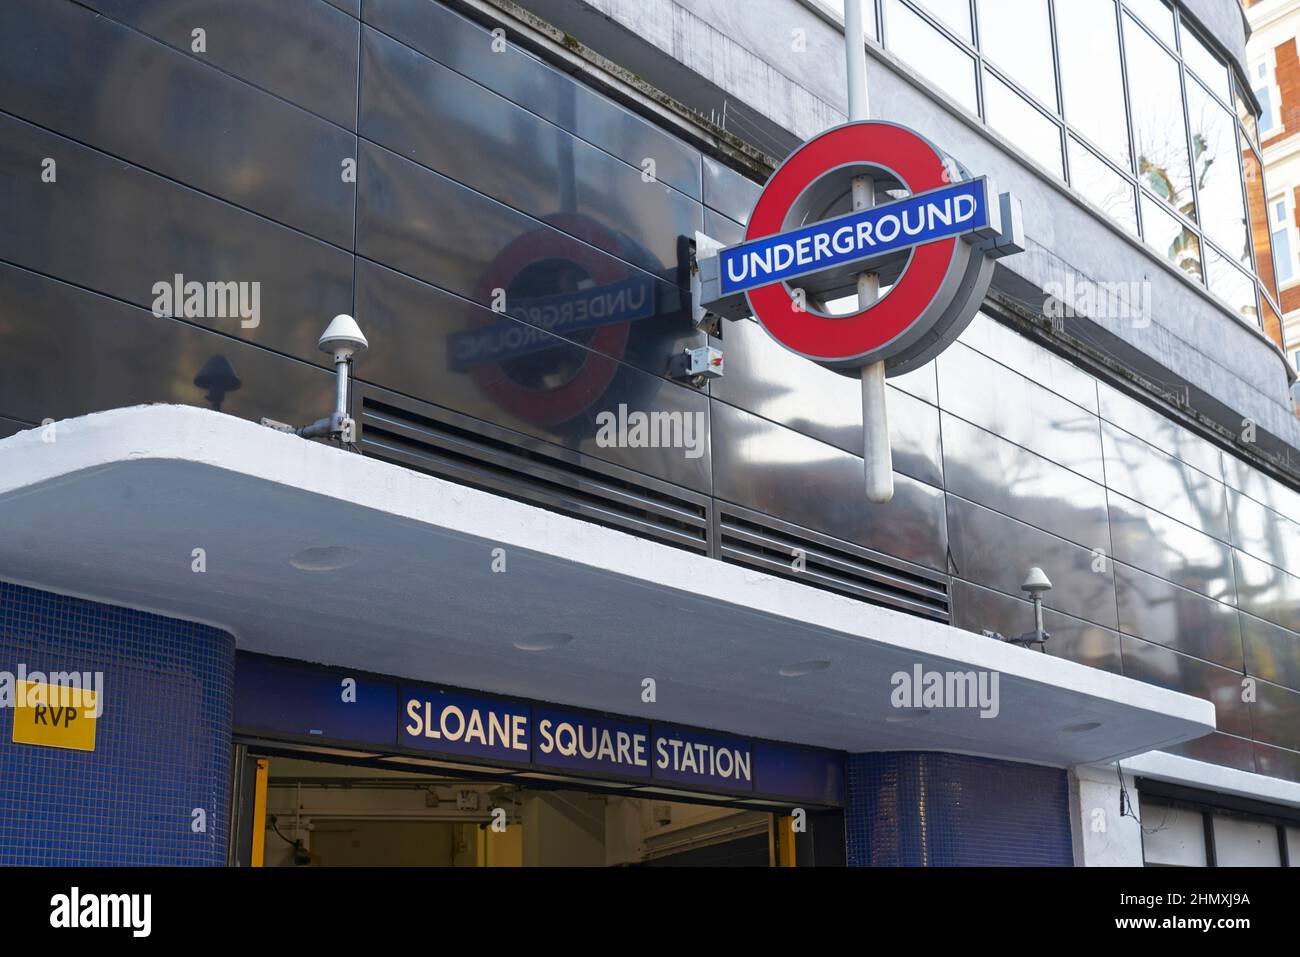 sloane square underground station Stock Photo